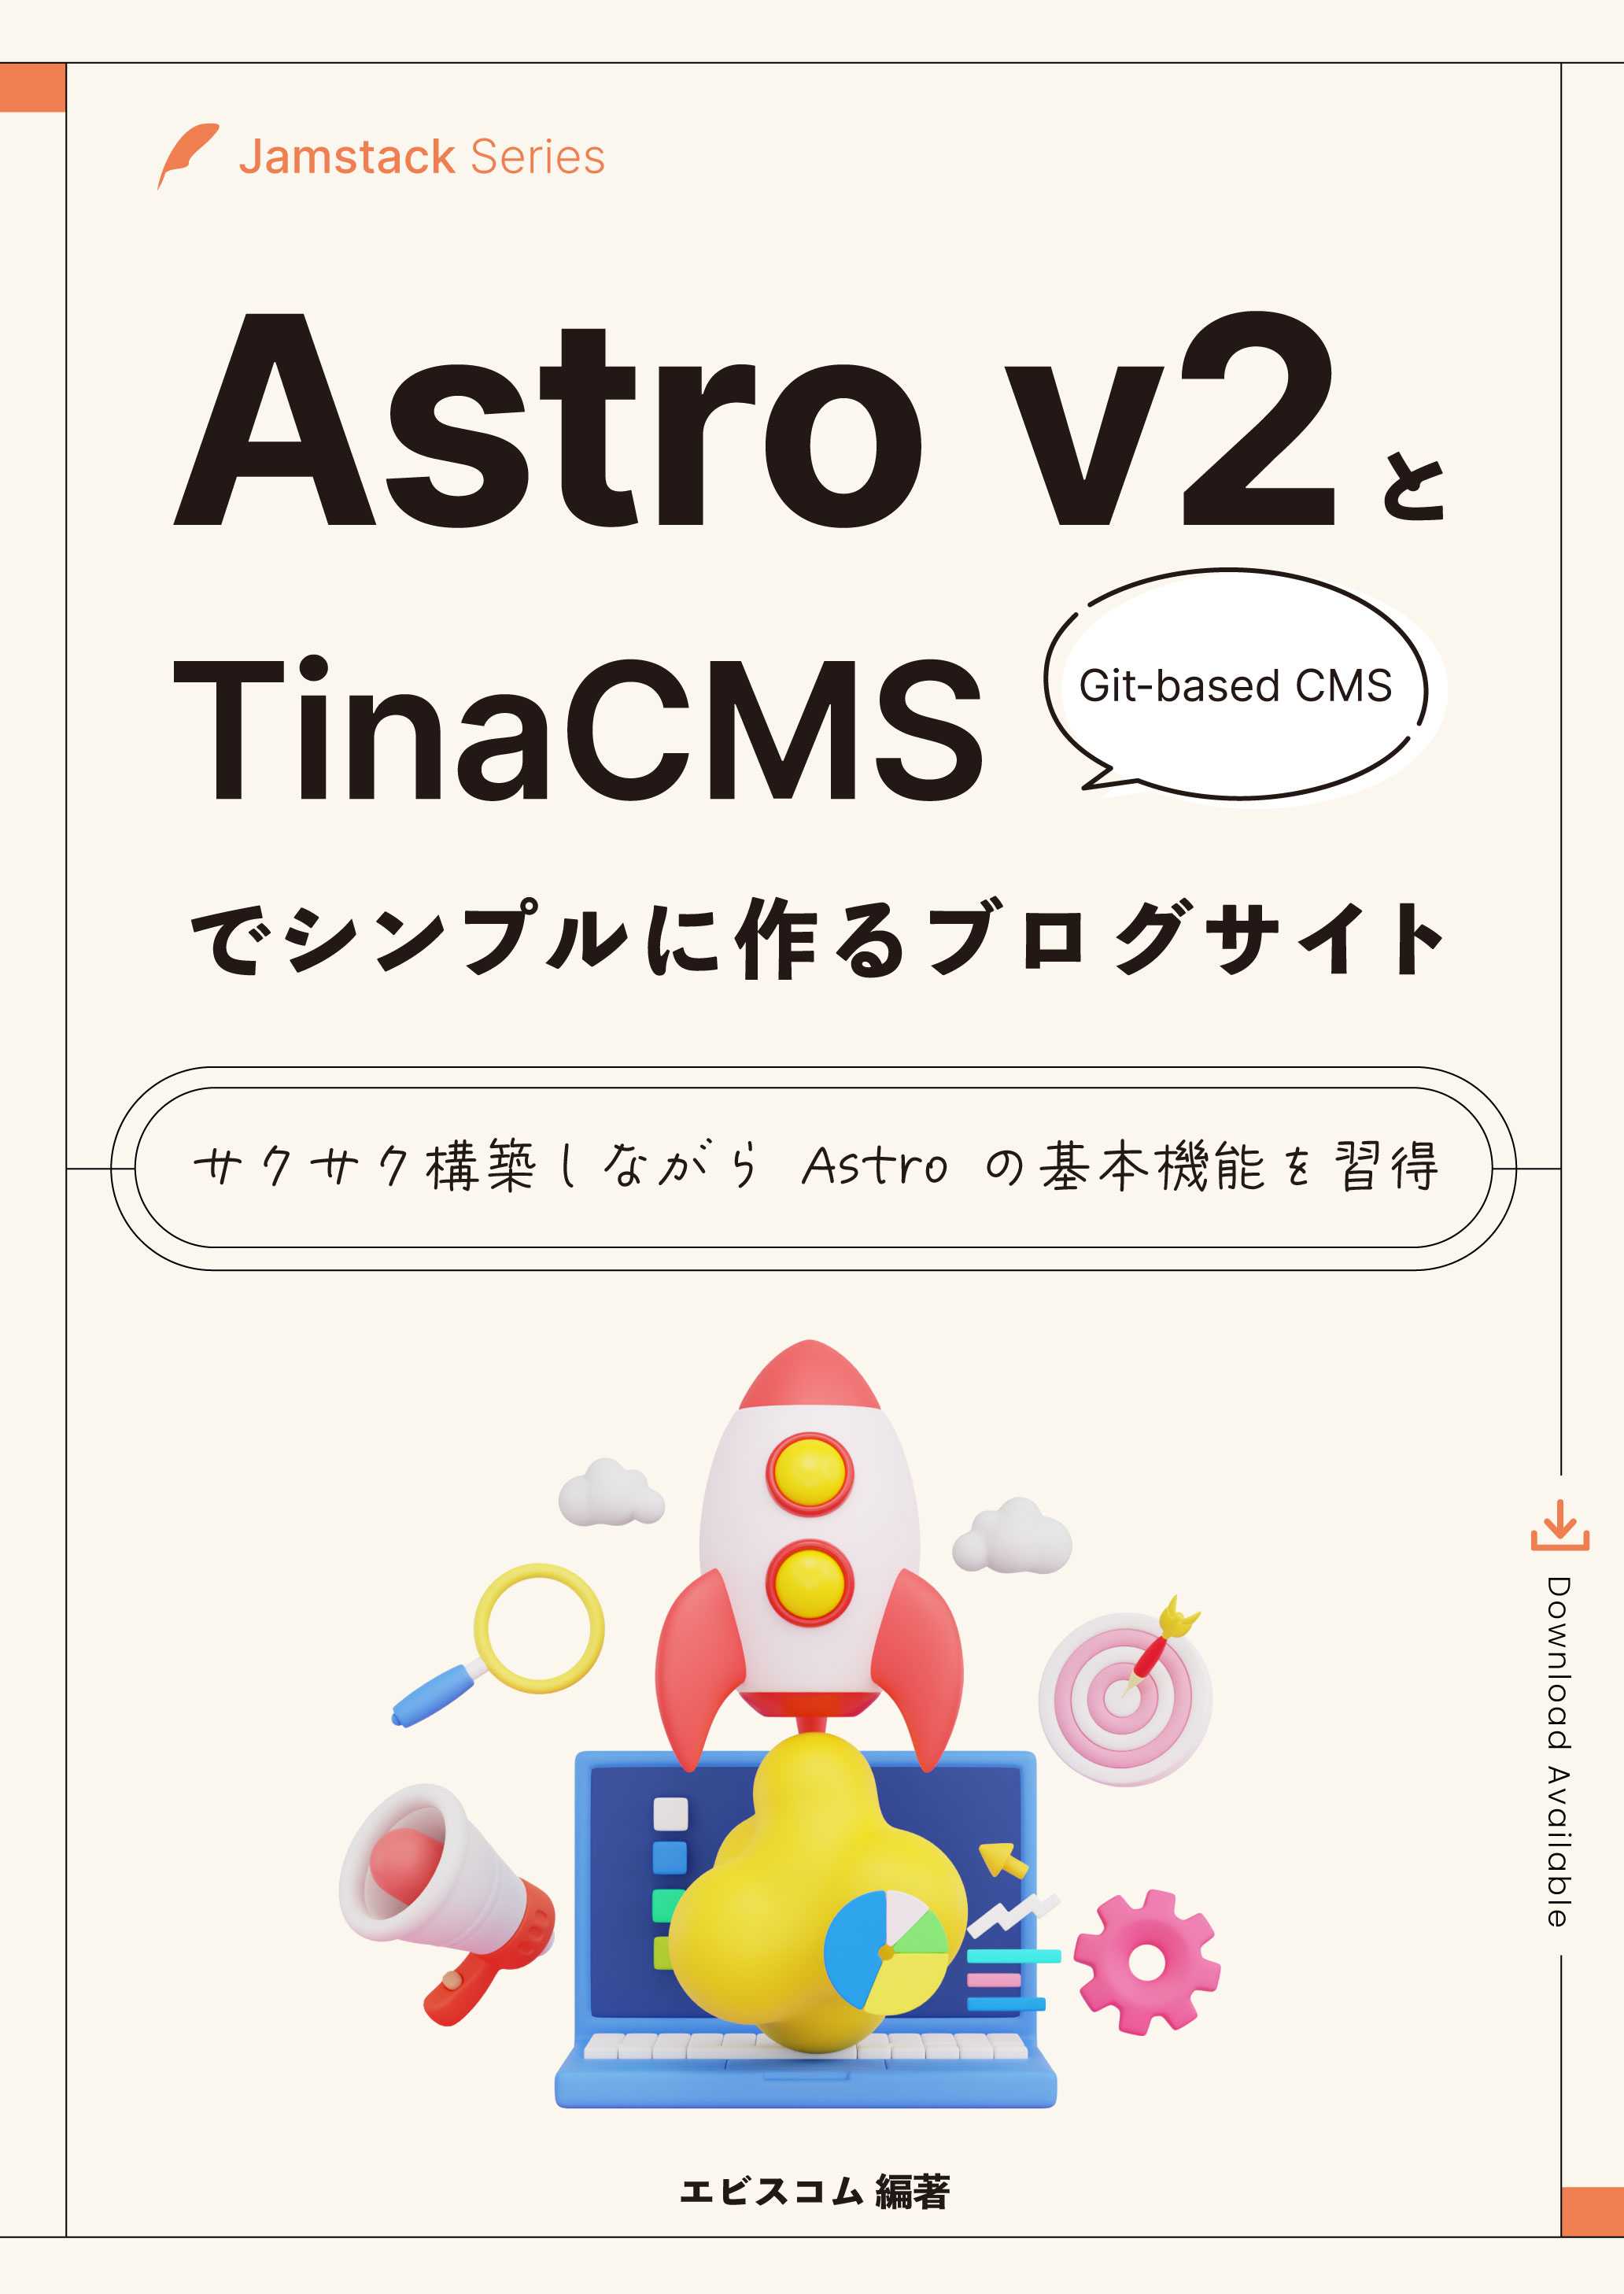 Astro v2とTinaCMSでシンプルに作るブログサイト